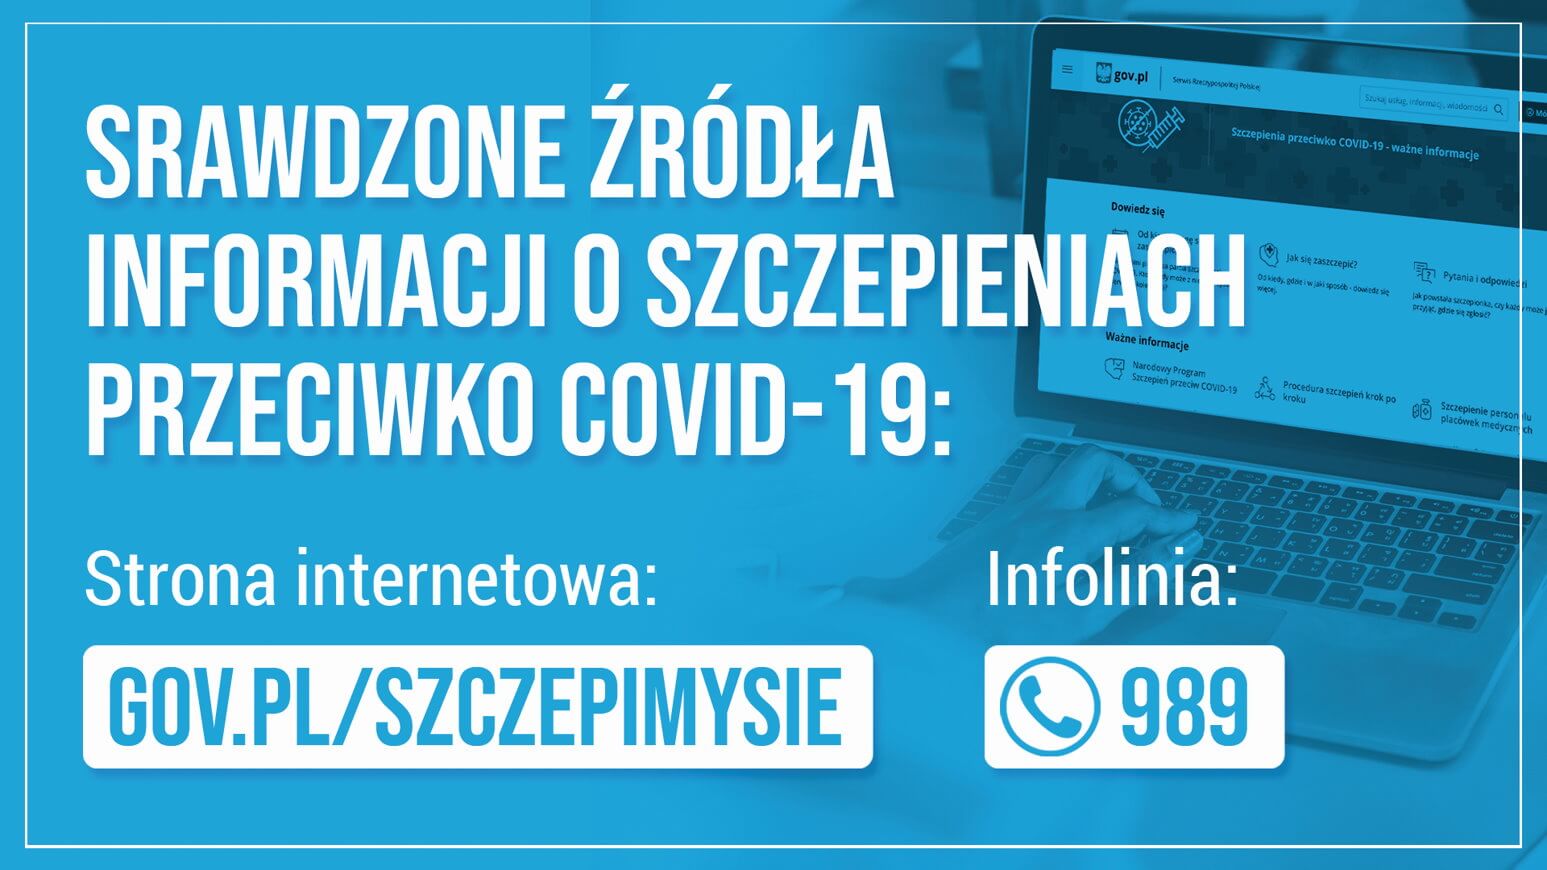 Grafika informacyjna z napisem „Sprawdzone informacje o szczepieniach przeciwko COVID-19:” z adresem strony gov.pl/szczepimysie i numerem infolinii 989 poniżej